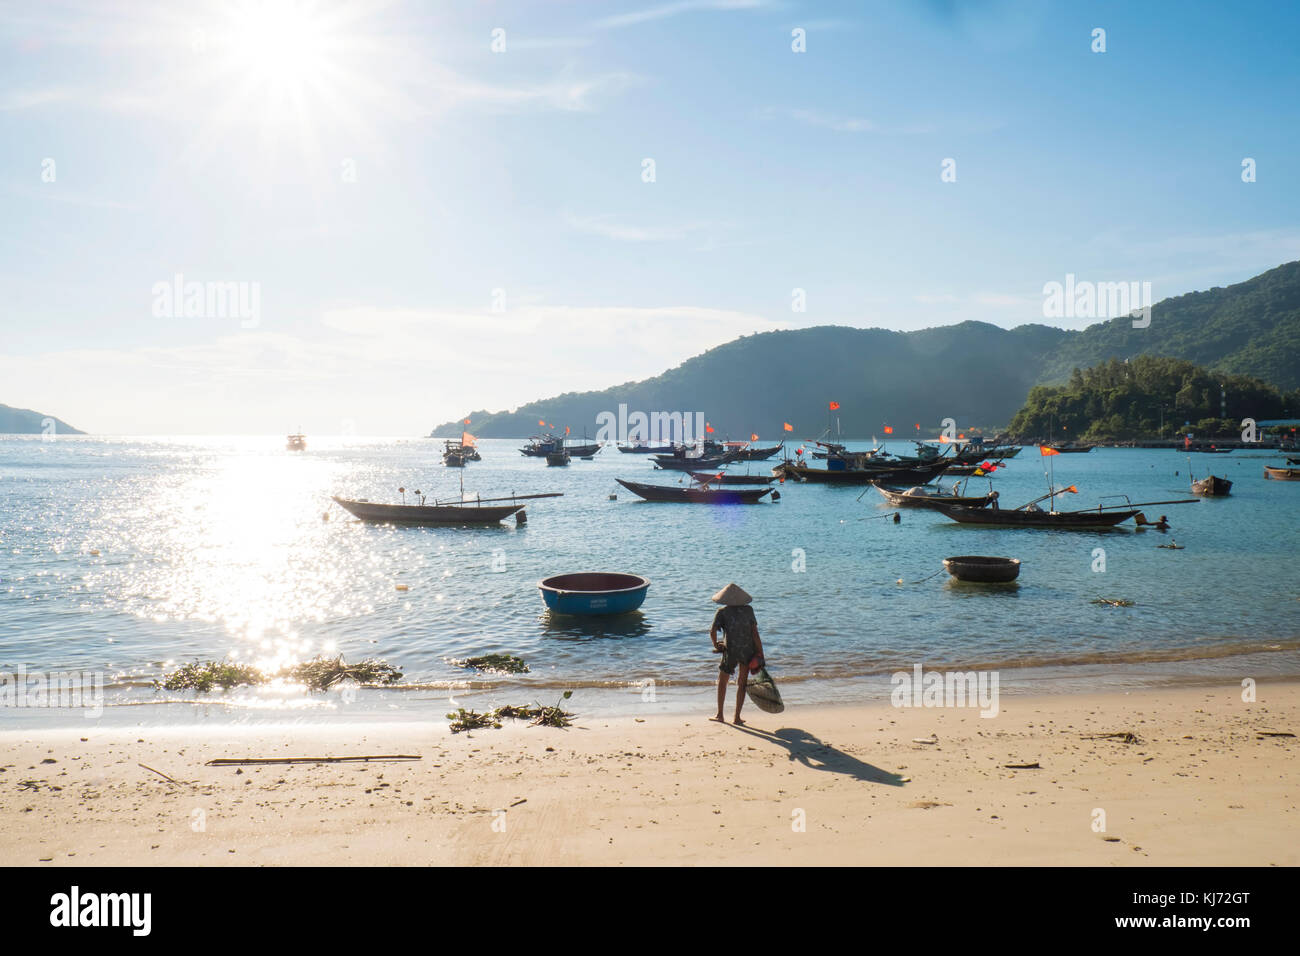 Bateaux de pêche au large de la plage sur les îles Cham dans Vietnam Banque D'Images